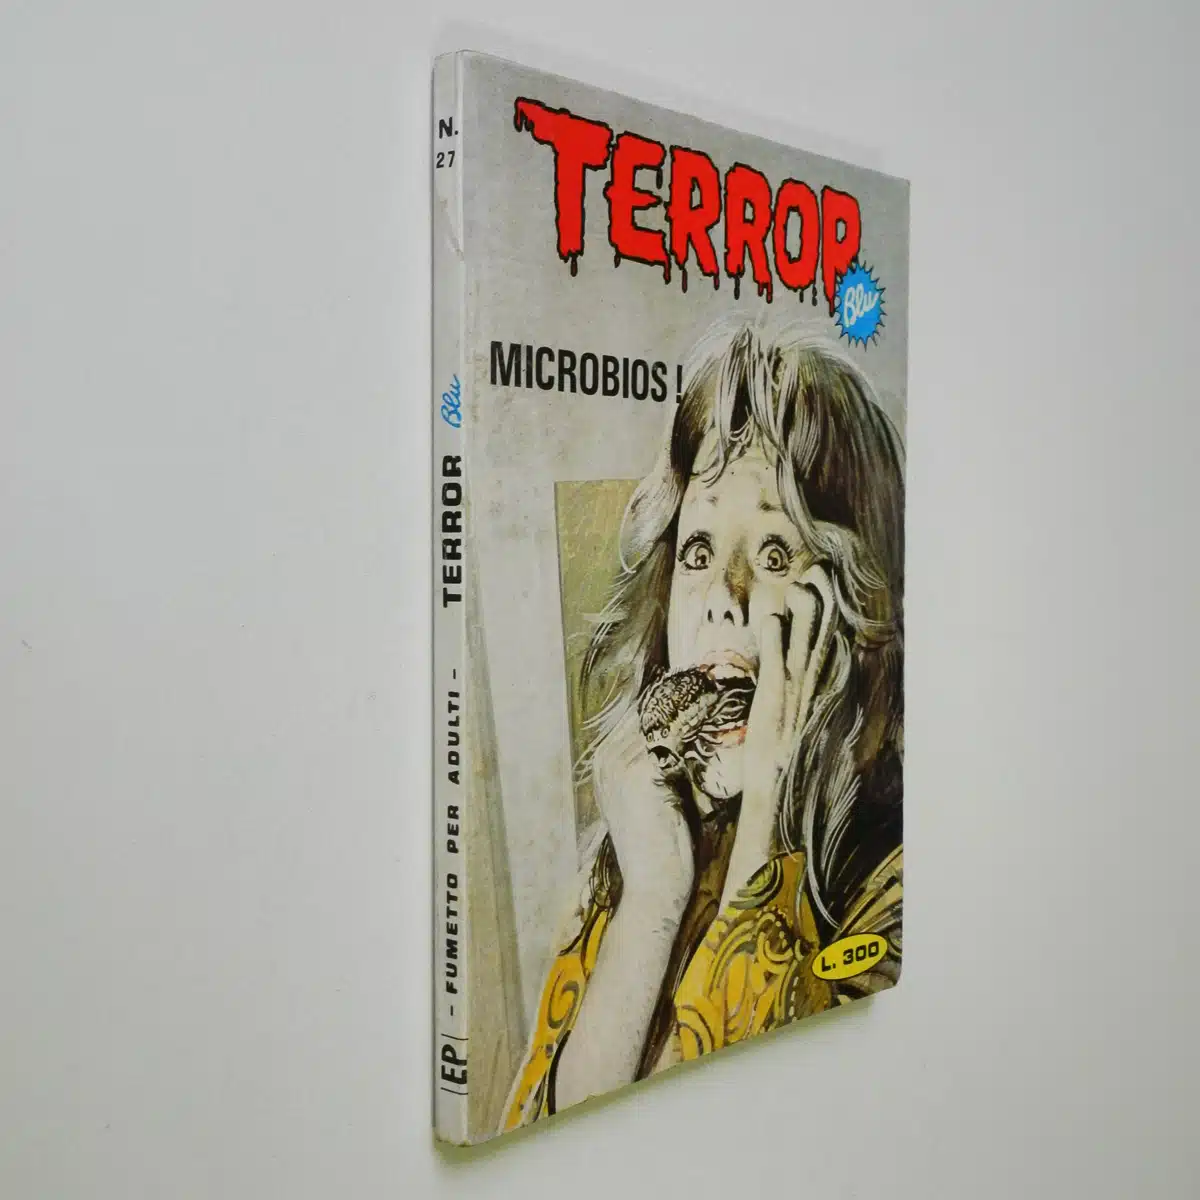 Terror Blu n. 27 Microbius